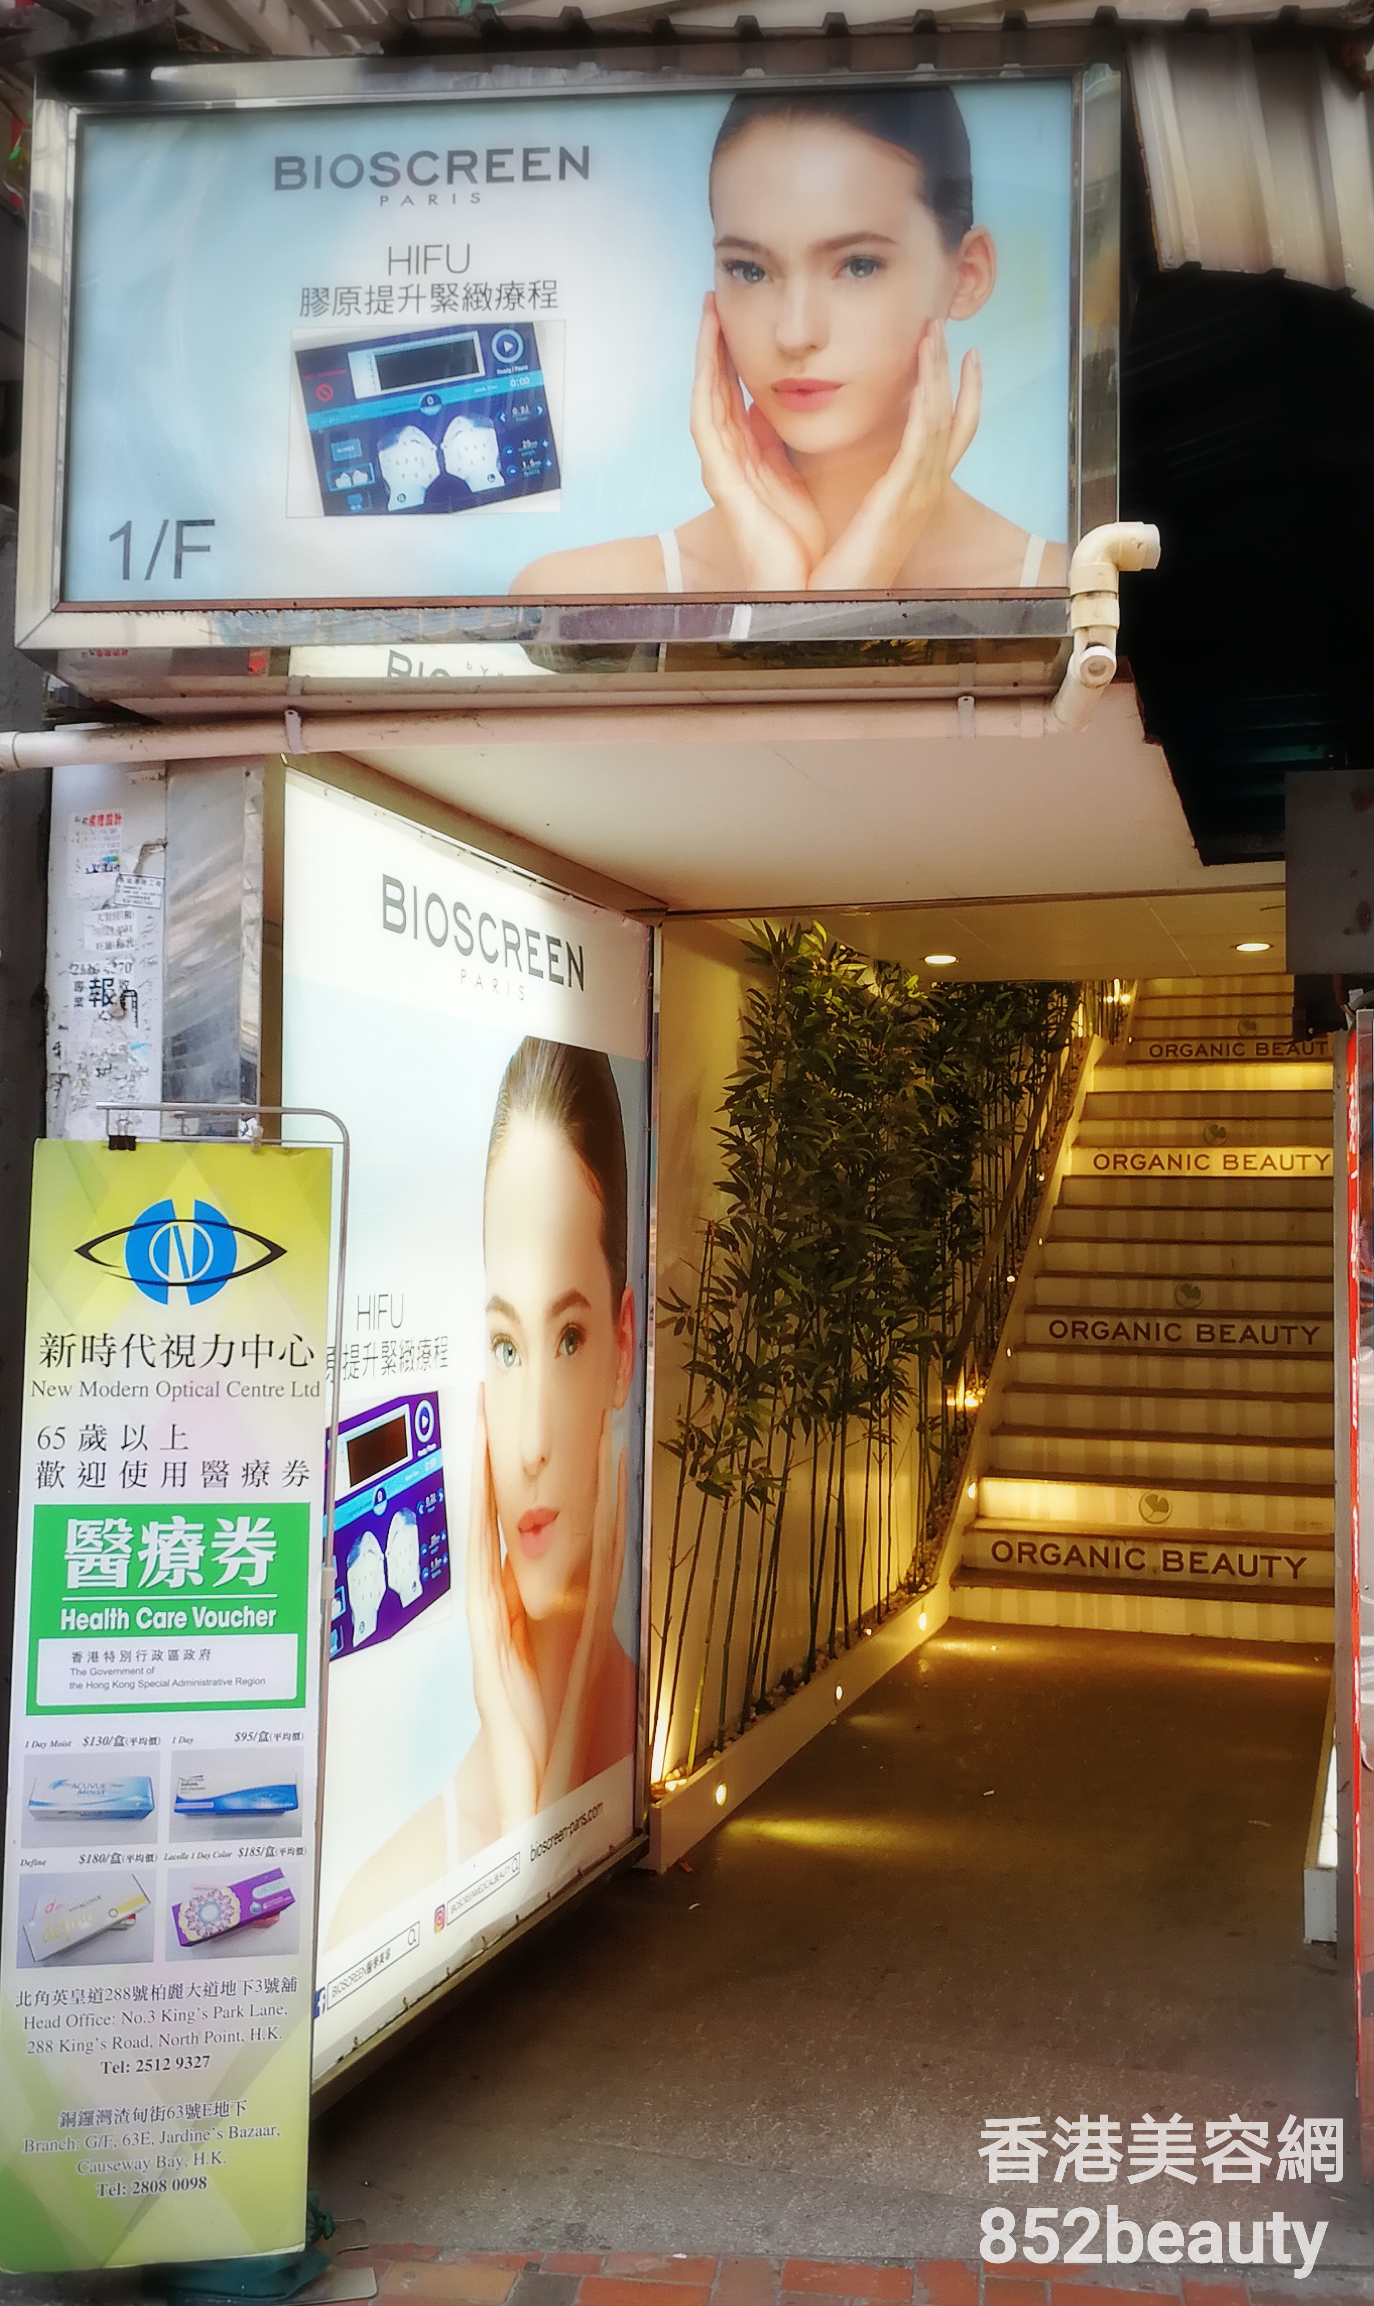 美容院 Beauty Salon 集团Bioscreen Organic Beauty (北角) @ 香港美容网 HK Beauty Salon